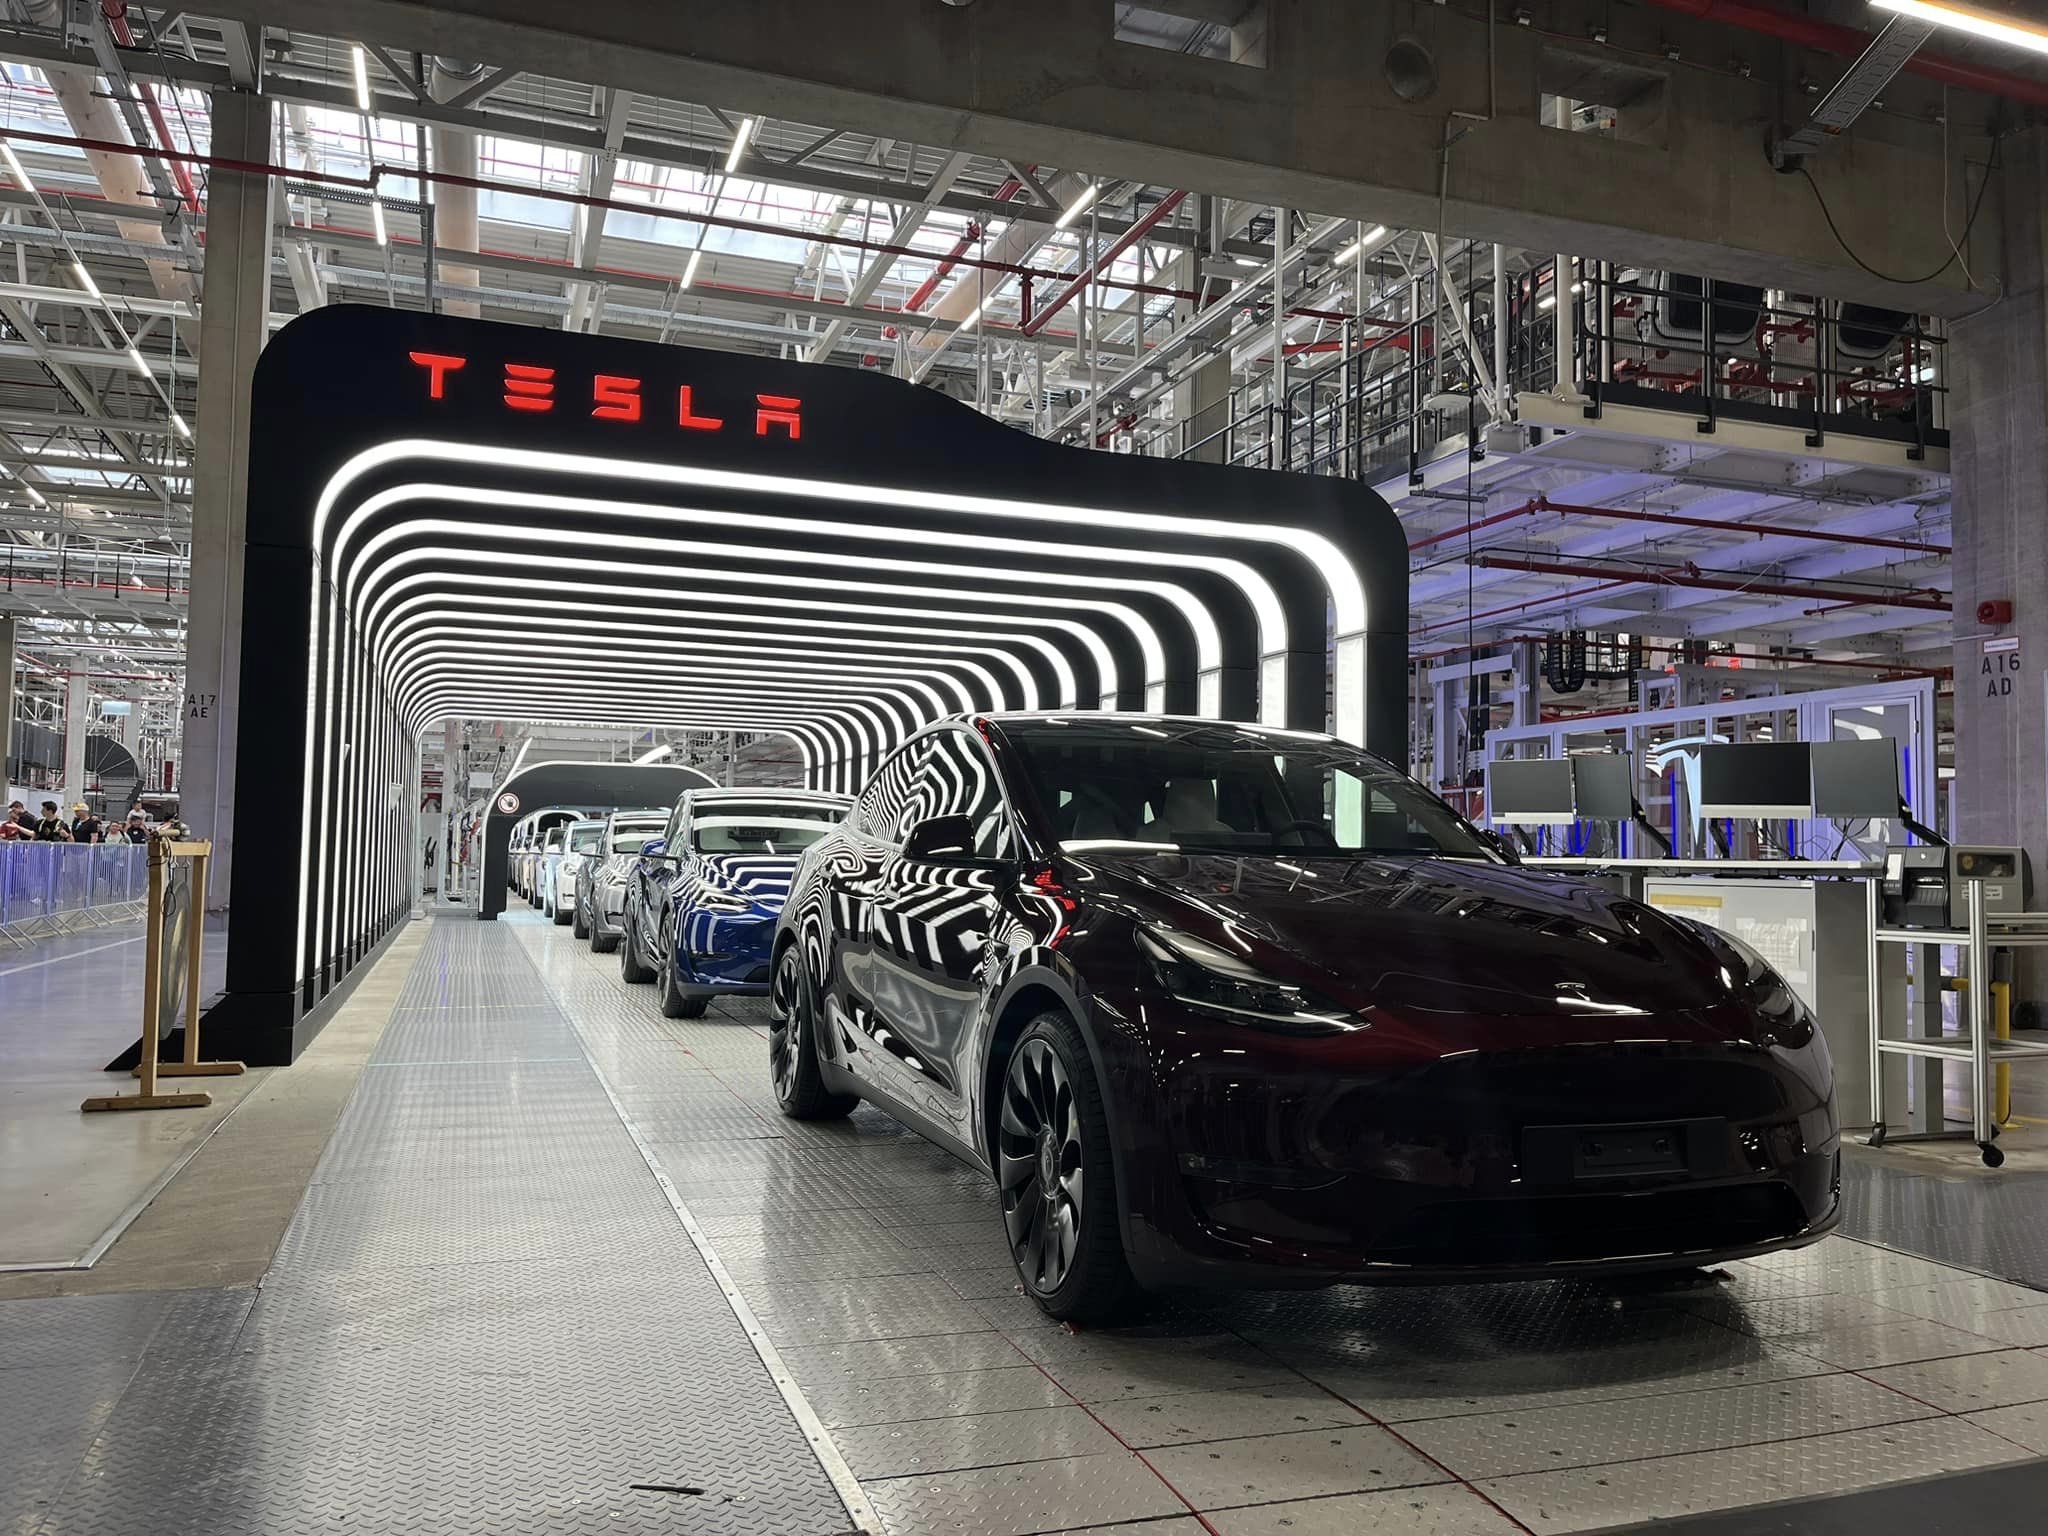 Τα βάσανα του Μασκ μεγαλώνουν καθώς η απεργία στην Tesla εξαπλώνεται